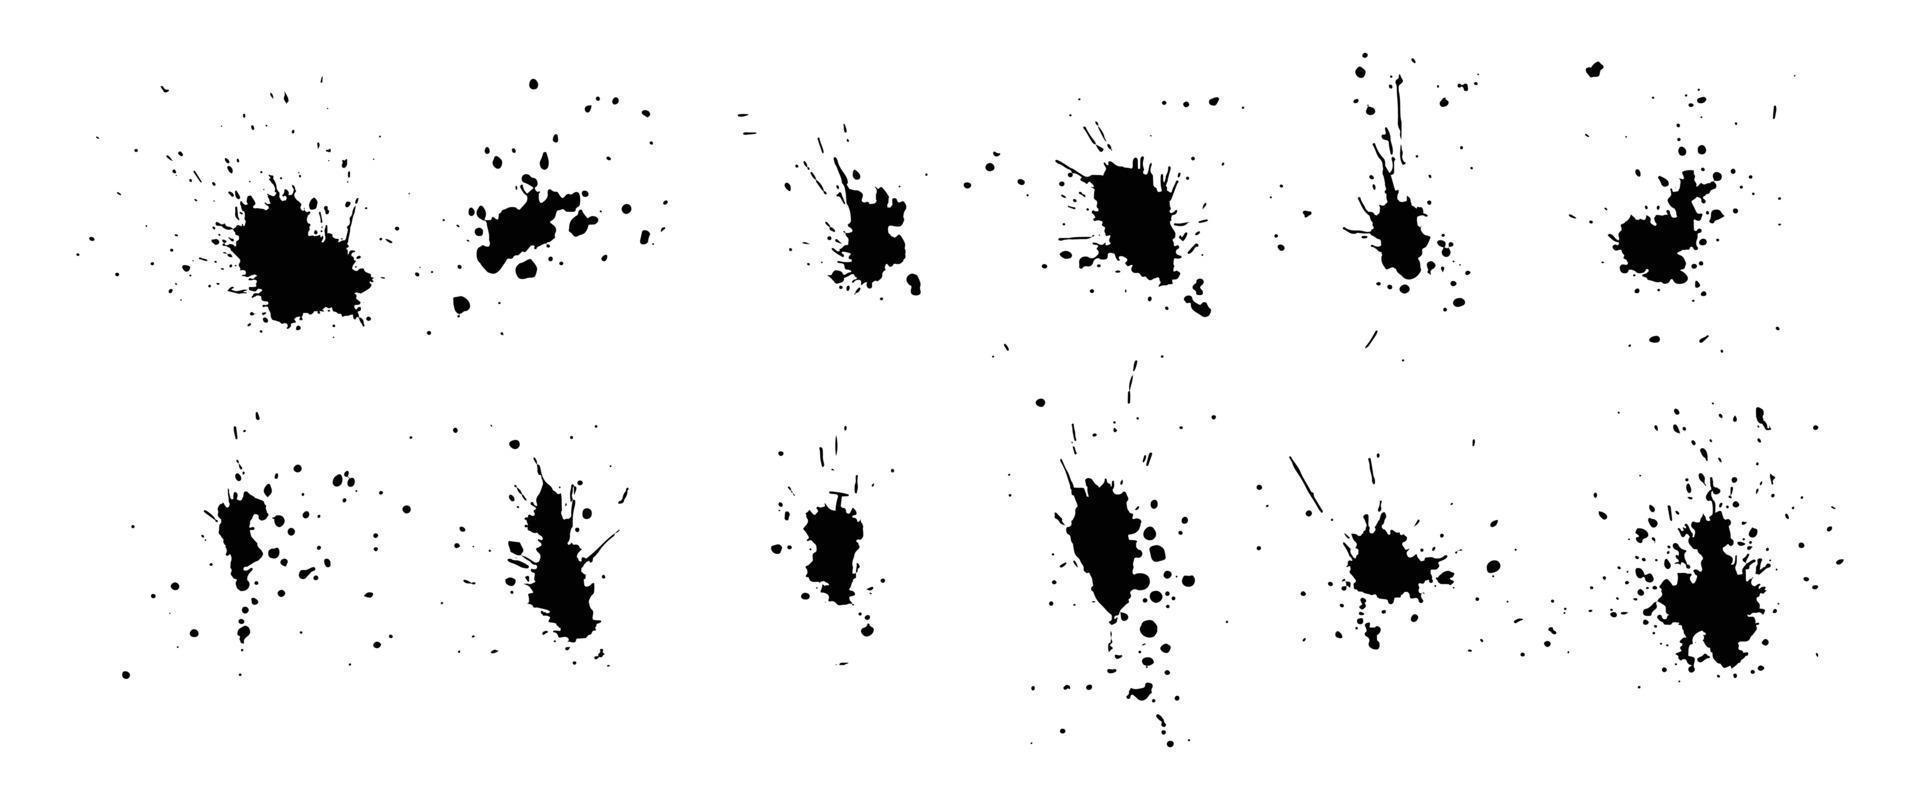 collectie abstract van inktslag en inkt splash voor grunge design elementen. zwarte penseelstreek en plonstextuur op wit papier. handgetekende illustratieborstel voor vuile textuur. vector